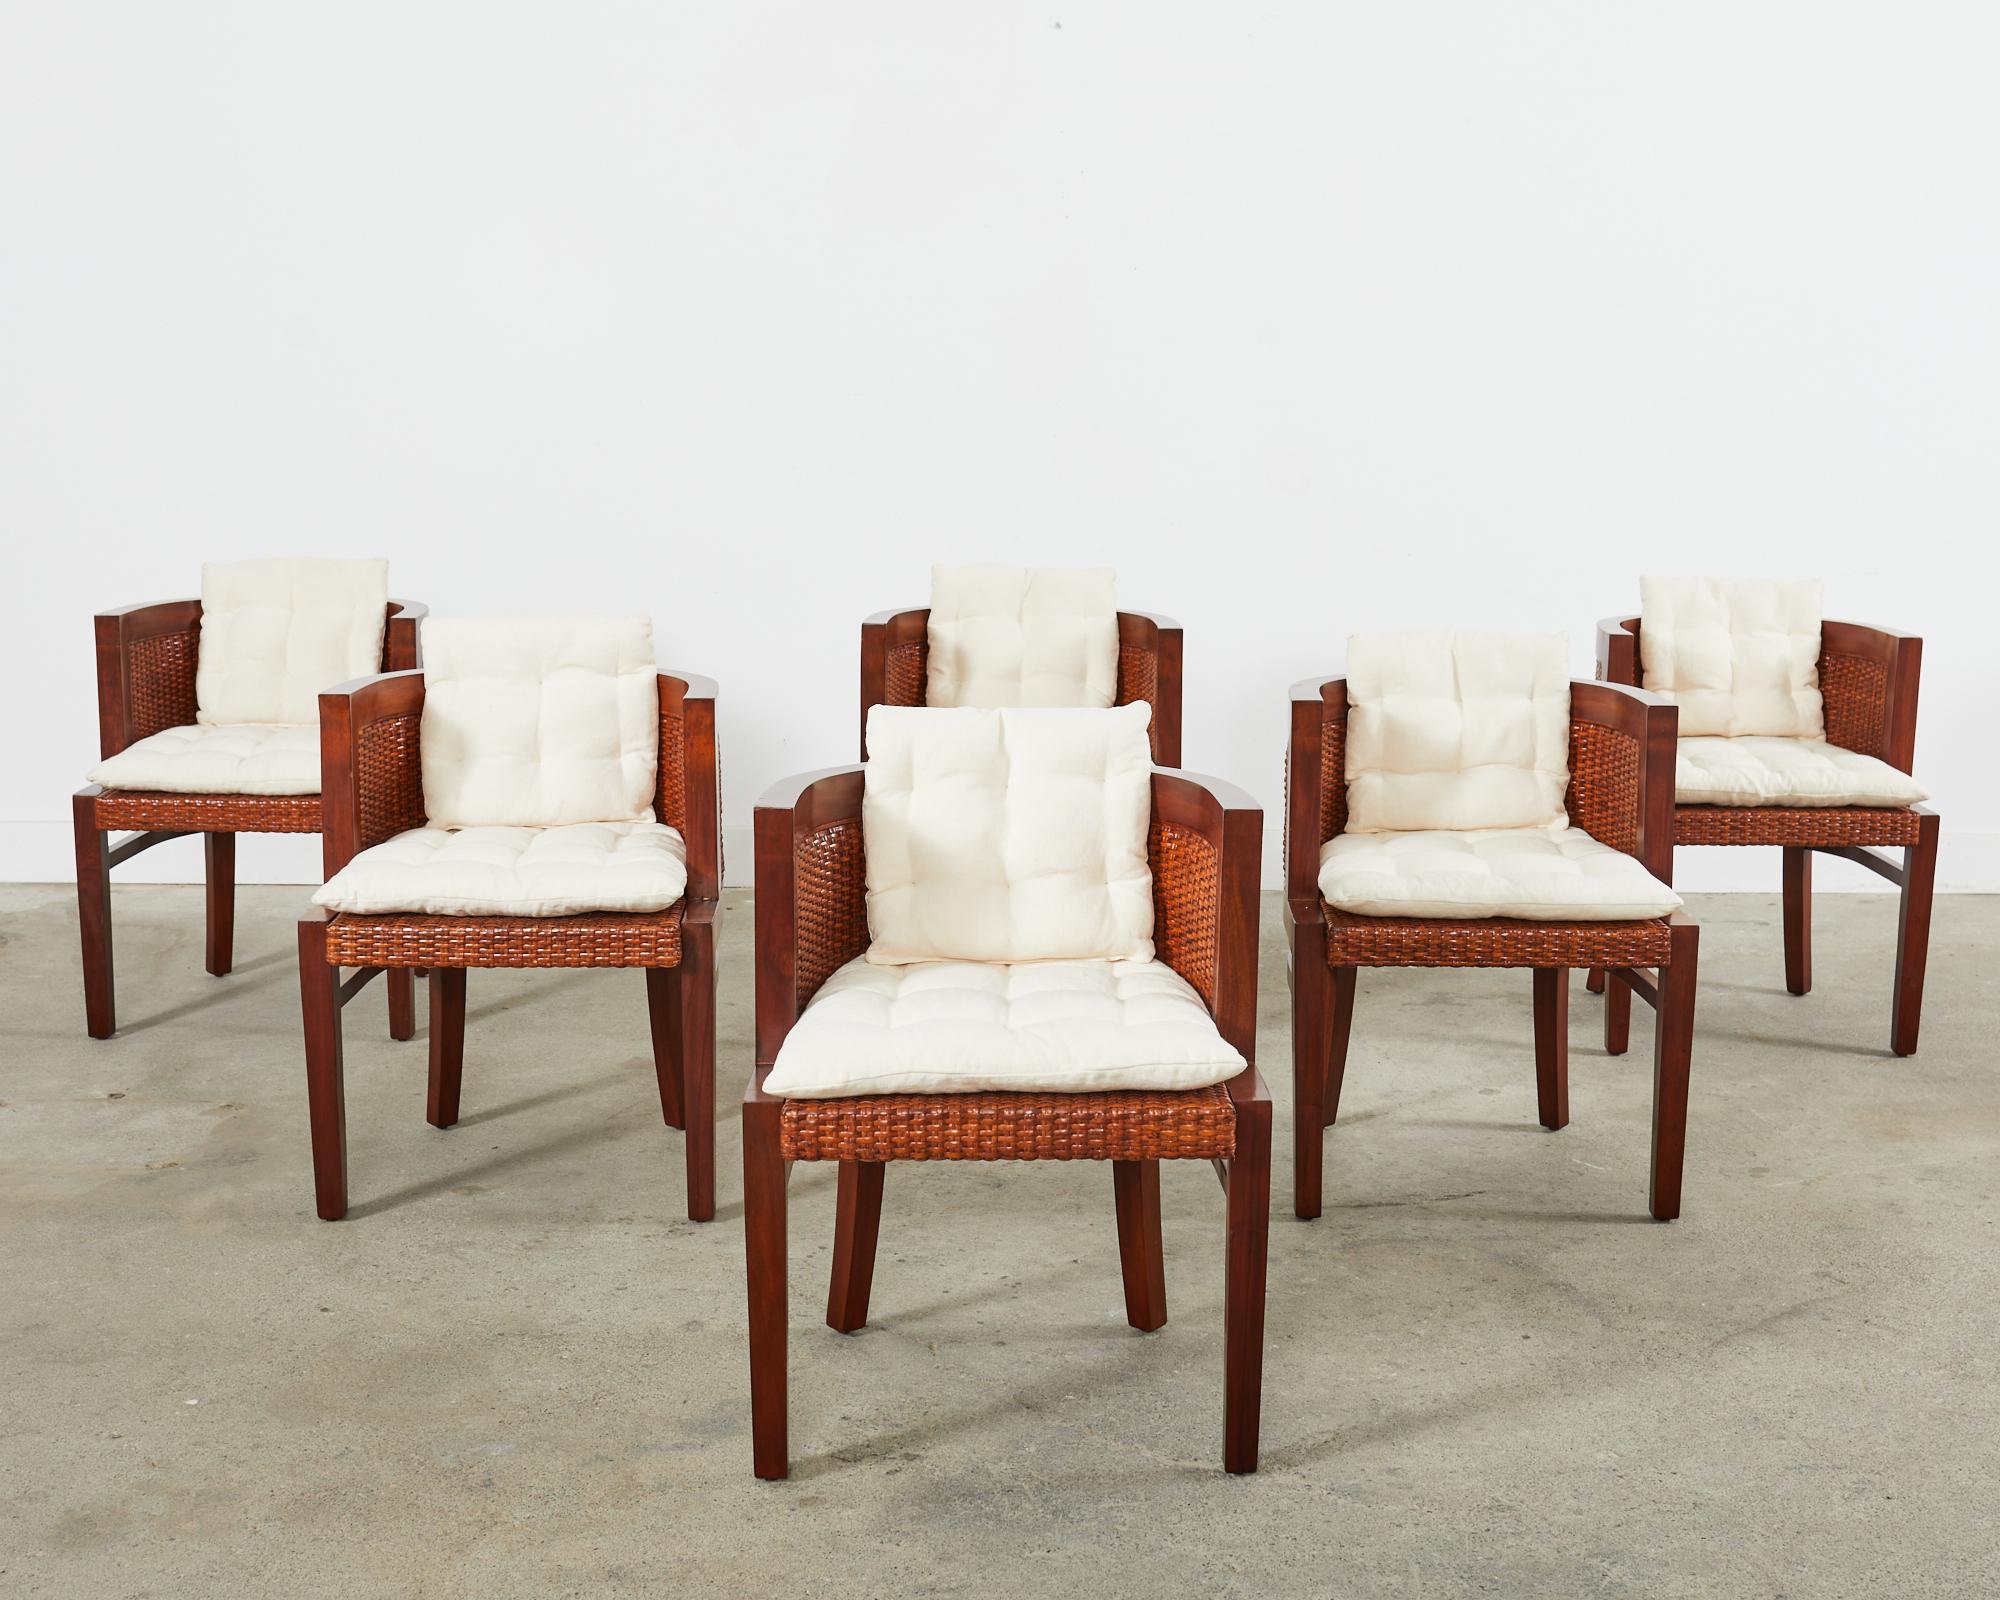 Seltener Satz von sechs Esszimmerstühlen oder Sesseln im britischen Kolonialstil von Ralph Lauren Home mit Tonnenrücken. Die Stühle der Collection'S bestehen aus einem Mahagoni-Rahmen mit einer runden Rückenlehne, die auf der Sitzfläche und den